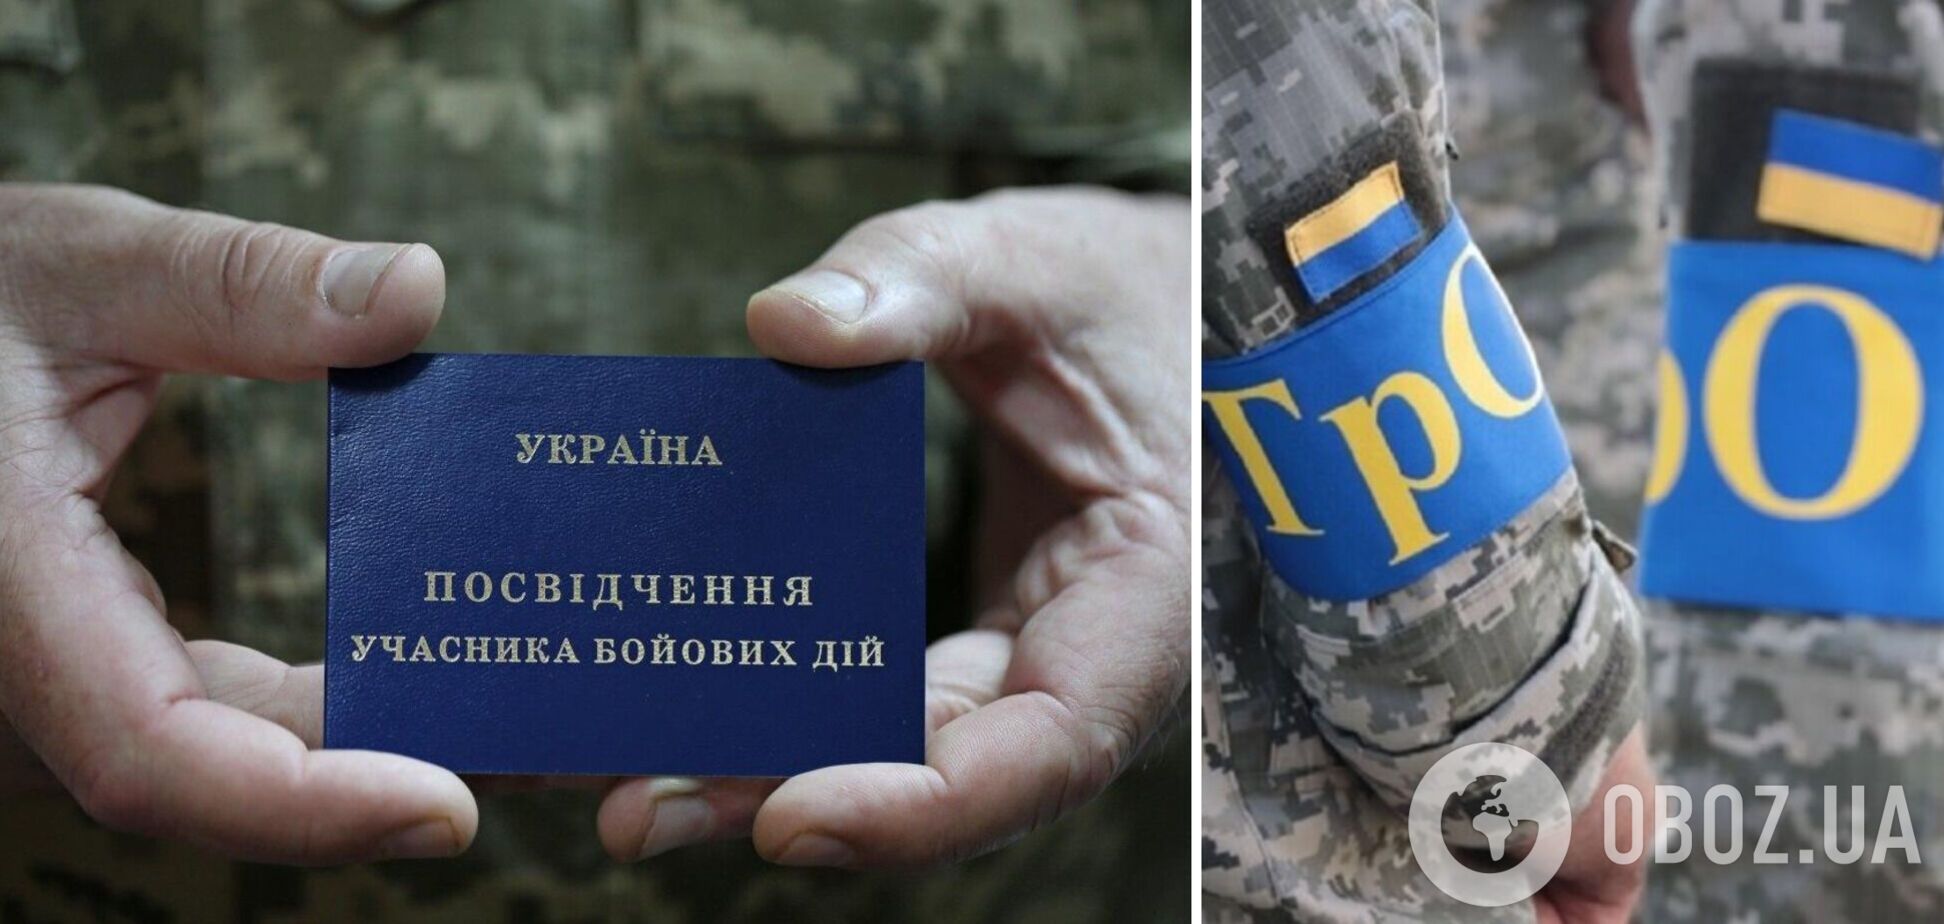 ВР предложили признать участниками боевых действий теробороновцев, защищавших Украину в первые дни войны